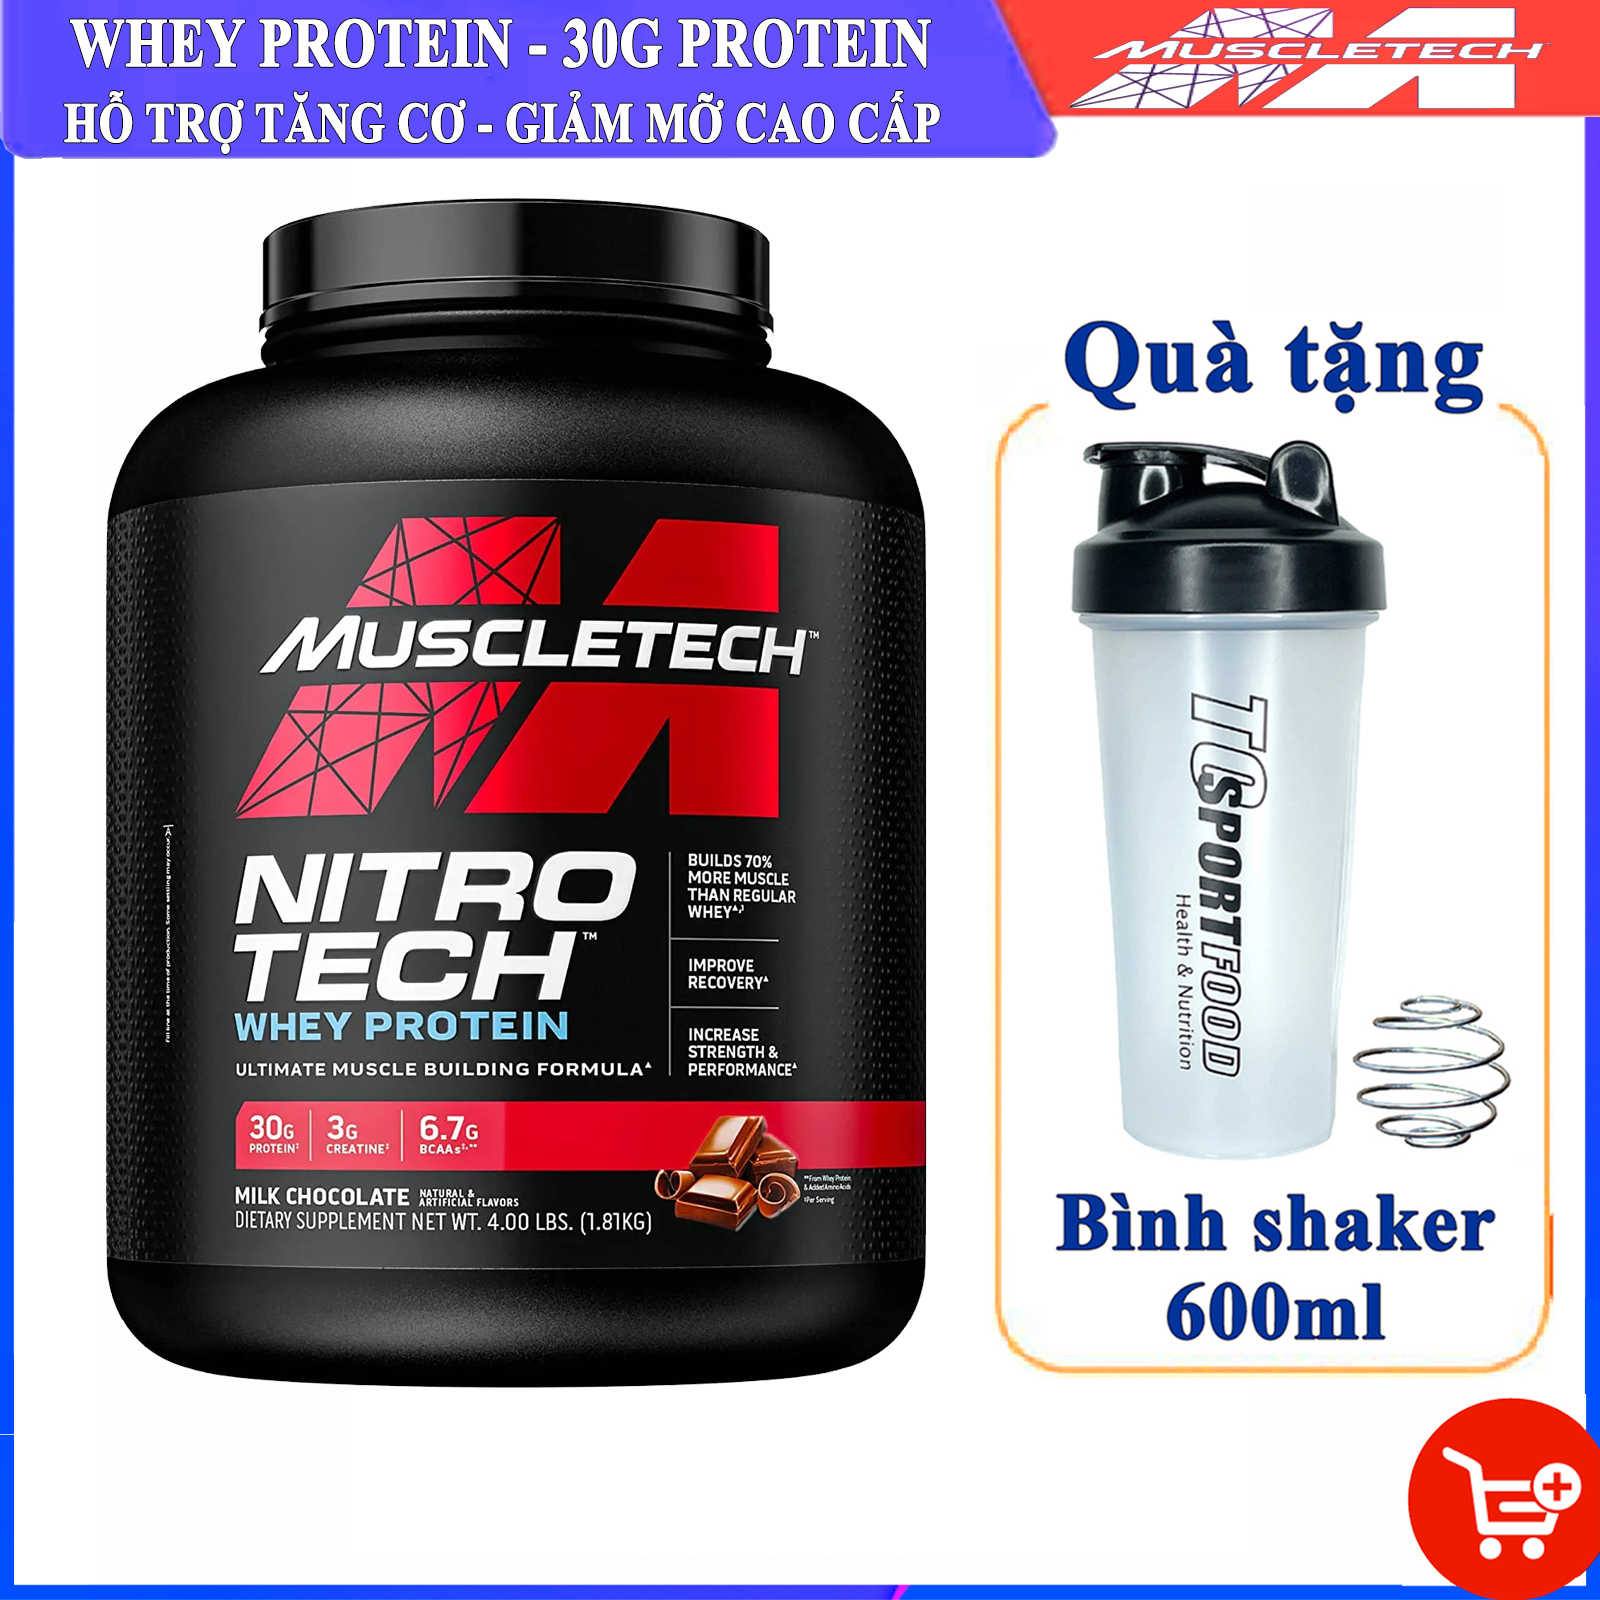 FREE SHAKER Sữa tăng cơ cao cấp Whey Protein Nitro Tech của MuscleTech hộp